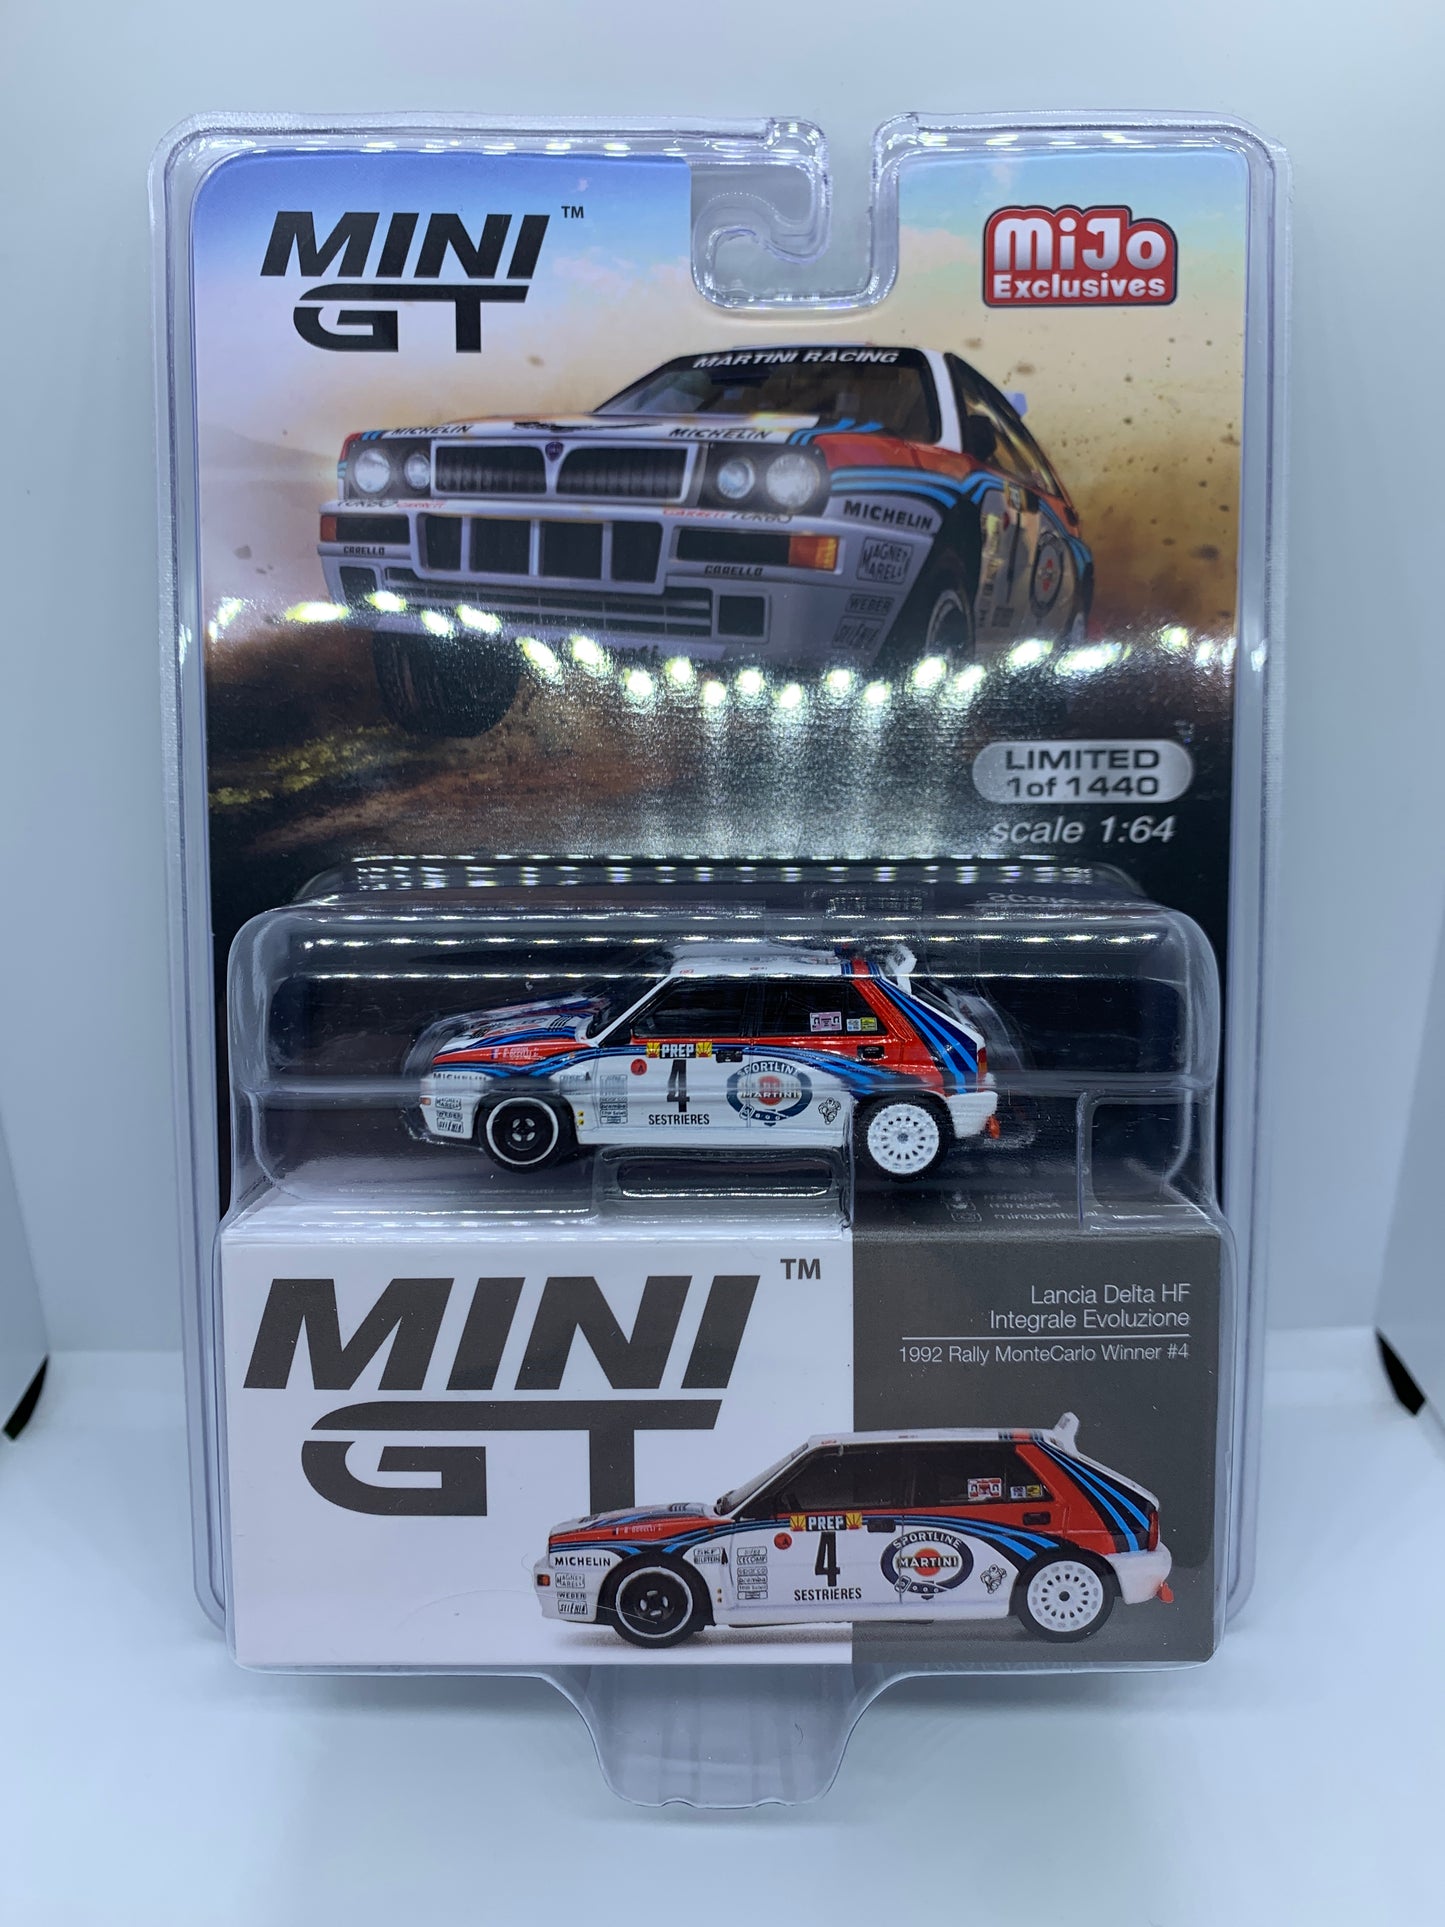 MINI GT - Lancia Delta HF Integrale Evoluzione Monte Carlo Rally - Display Blister Packaging